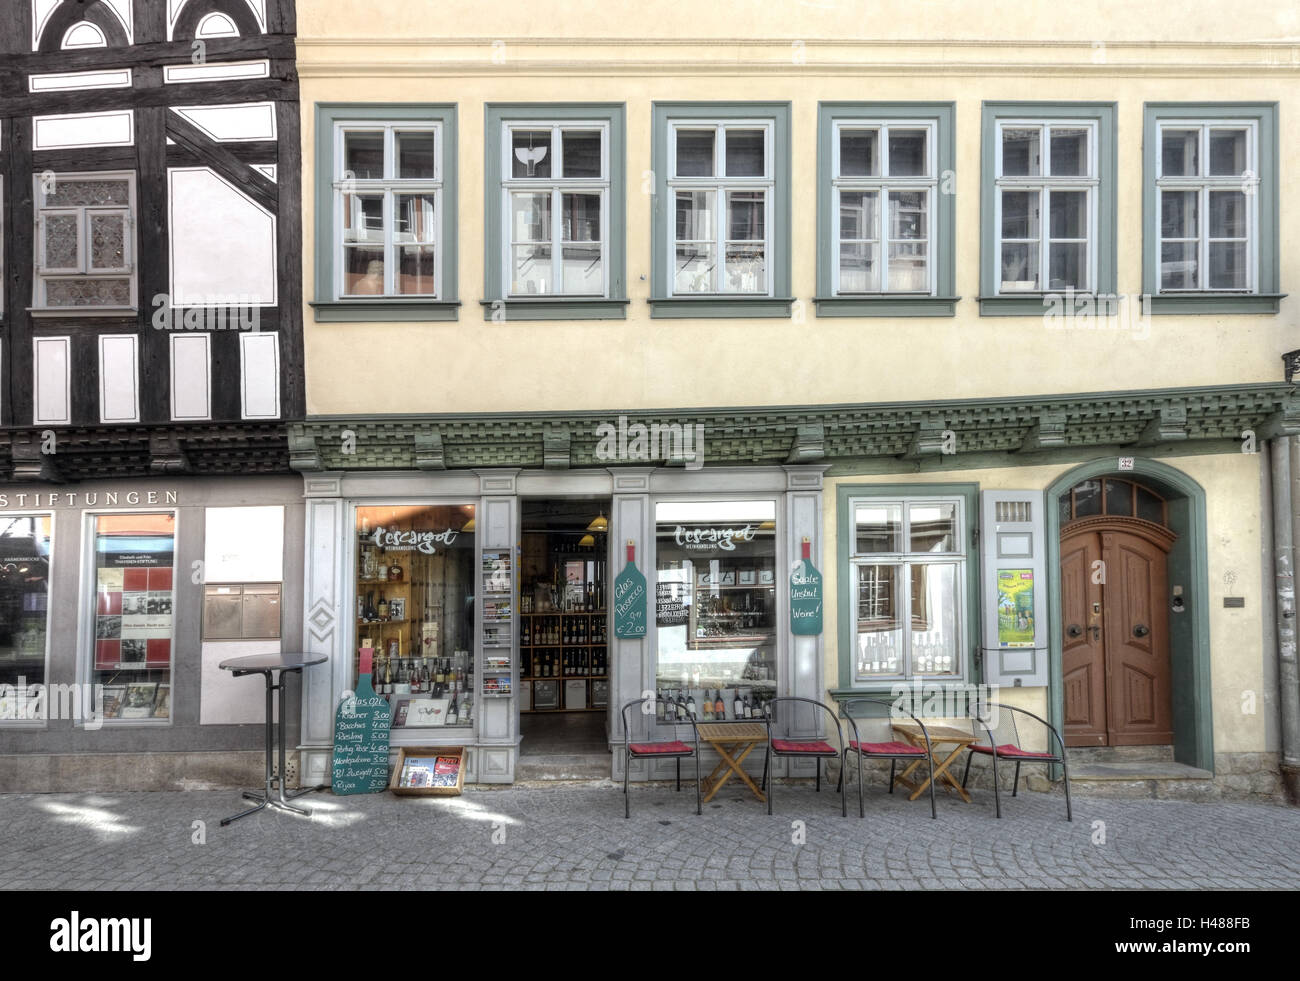 In Germania, in Turingia, Erfurt, negozio di vendita al dettaglio, case, street, Foto Stock